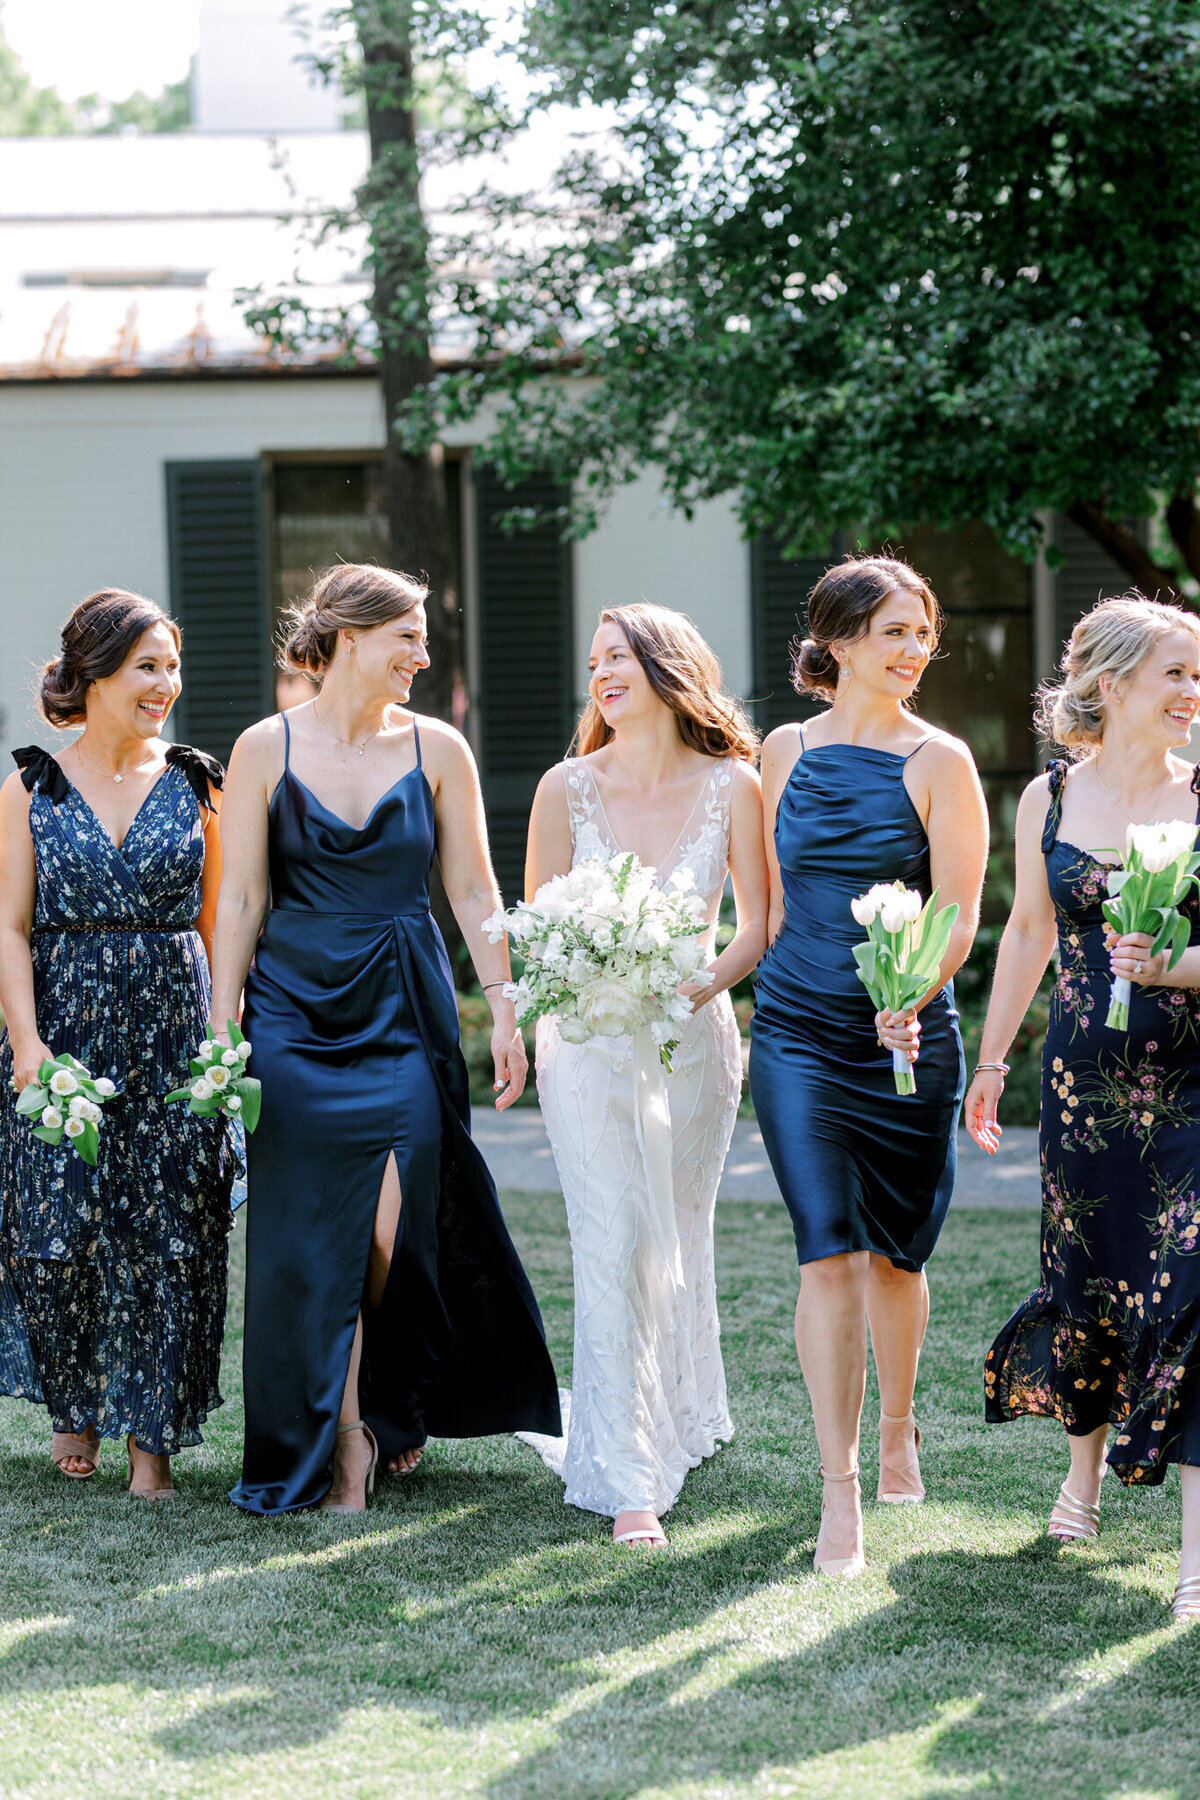 Gena & Matt's Wedding at the Dallas Arboretum | Dallas Wedding Photographer | Sami Kathryn Photography-105